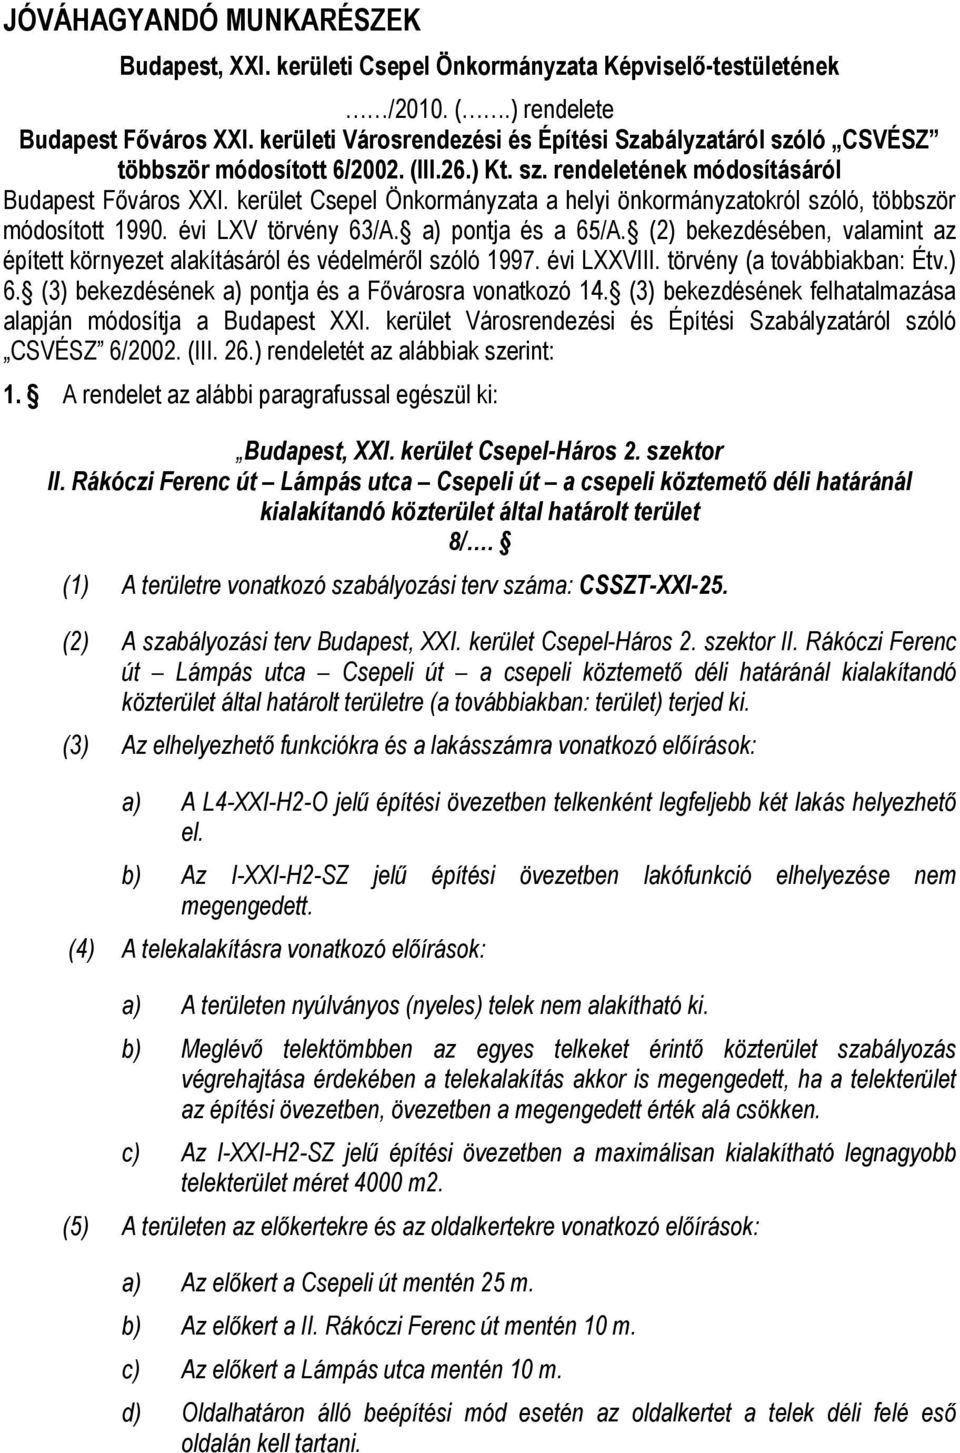 kerület Csepel Önkormányzata a helyi önkormányzatokról szóló, többször módosított 1990. évi LXV törvény 63/A. a) pontja és a 65/A.